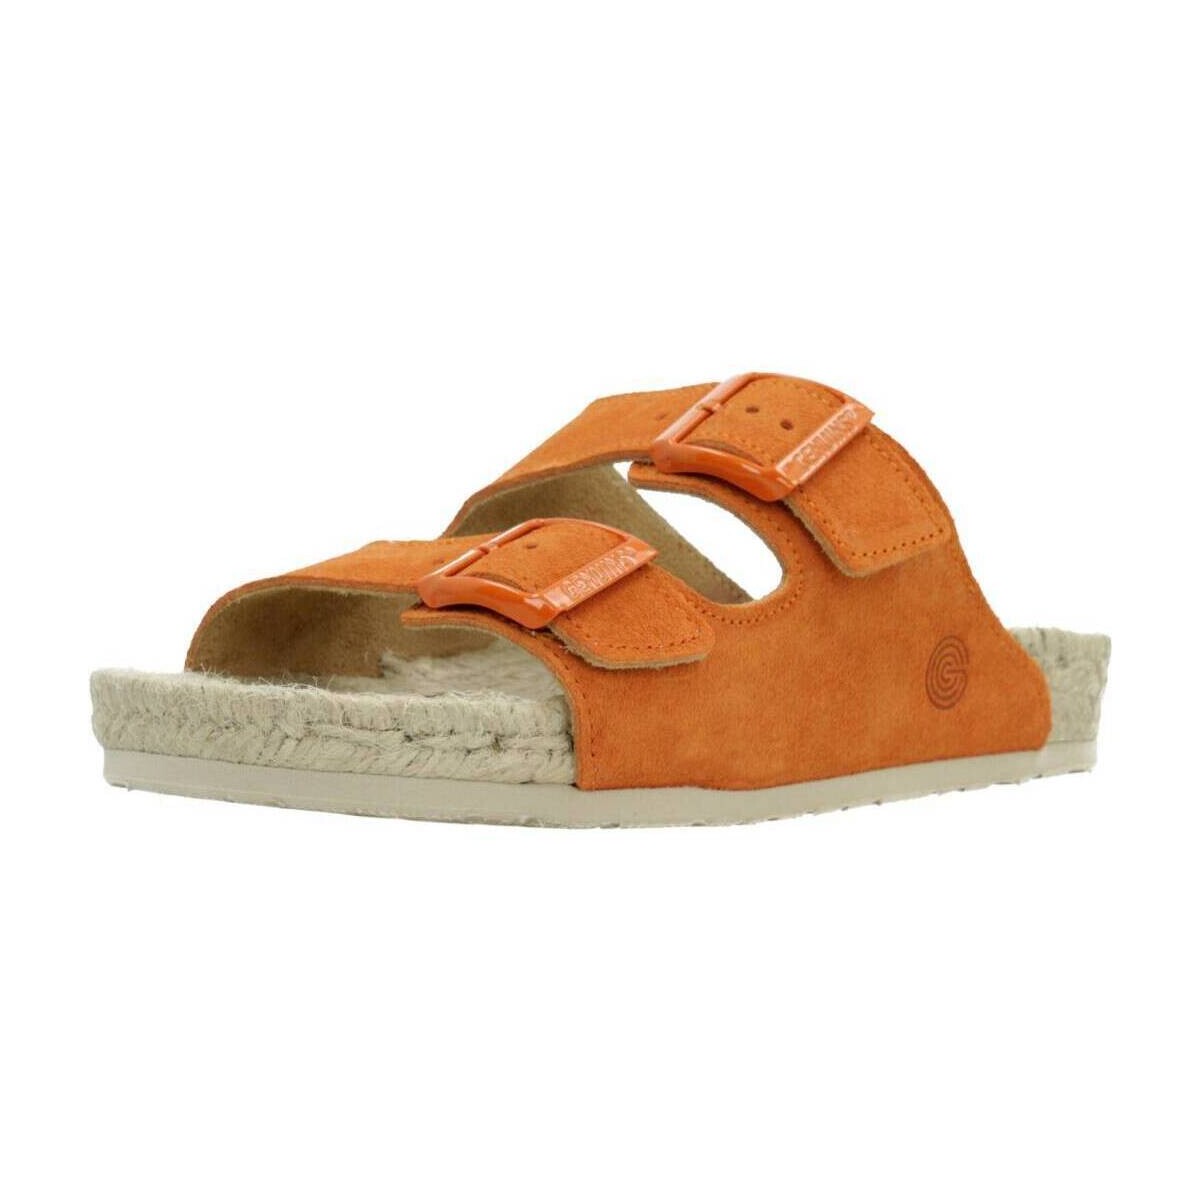 Zapatos Mujer Sandalias Genuins INCA Naranja